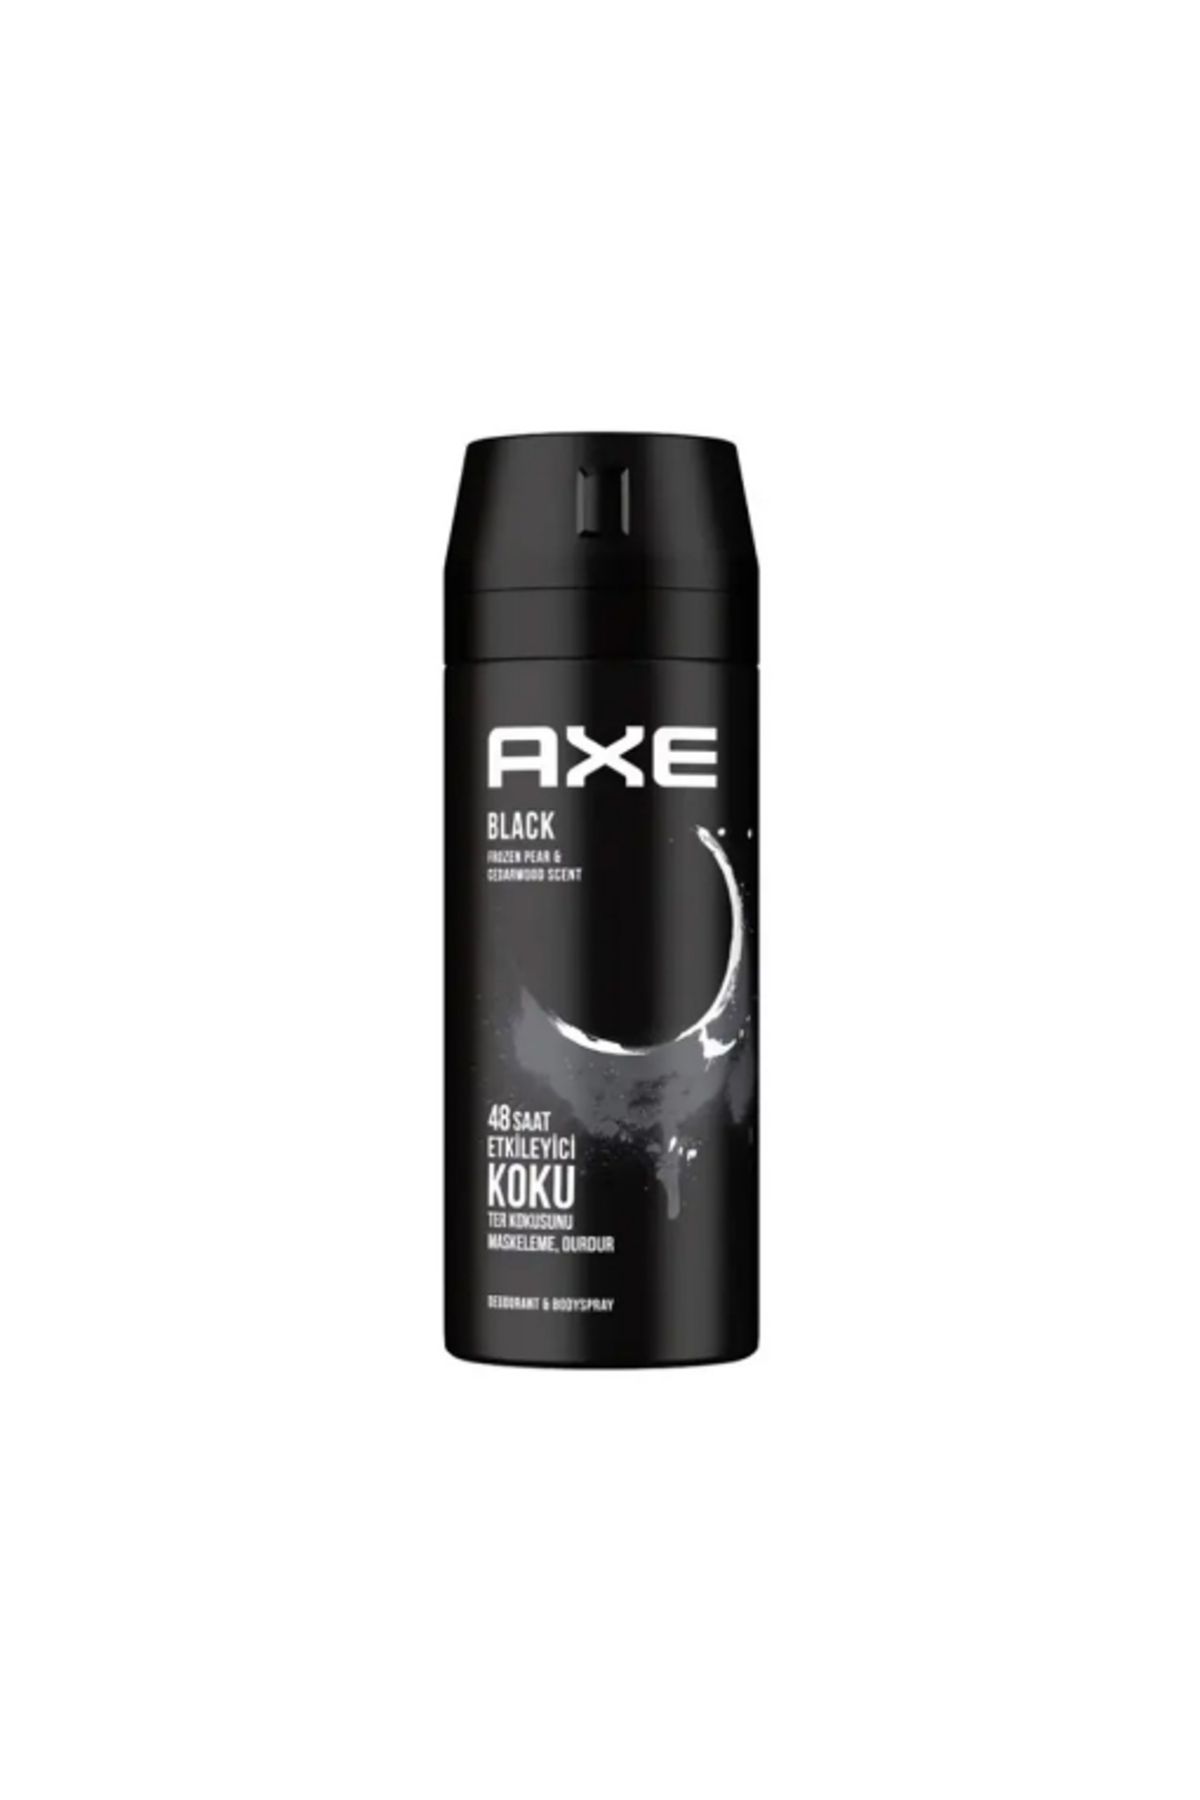 Axe Erkek Sprey Deodorant Black 48 Saat Etkileyici Koku 150 ml